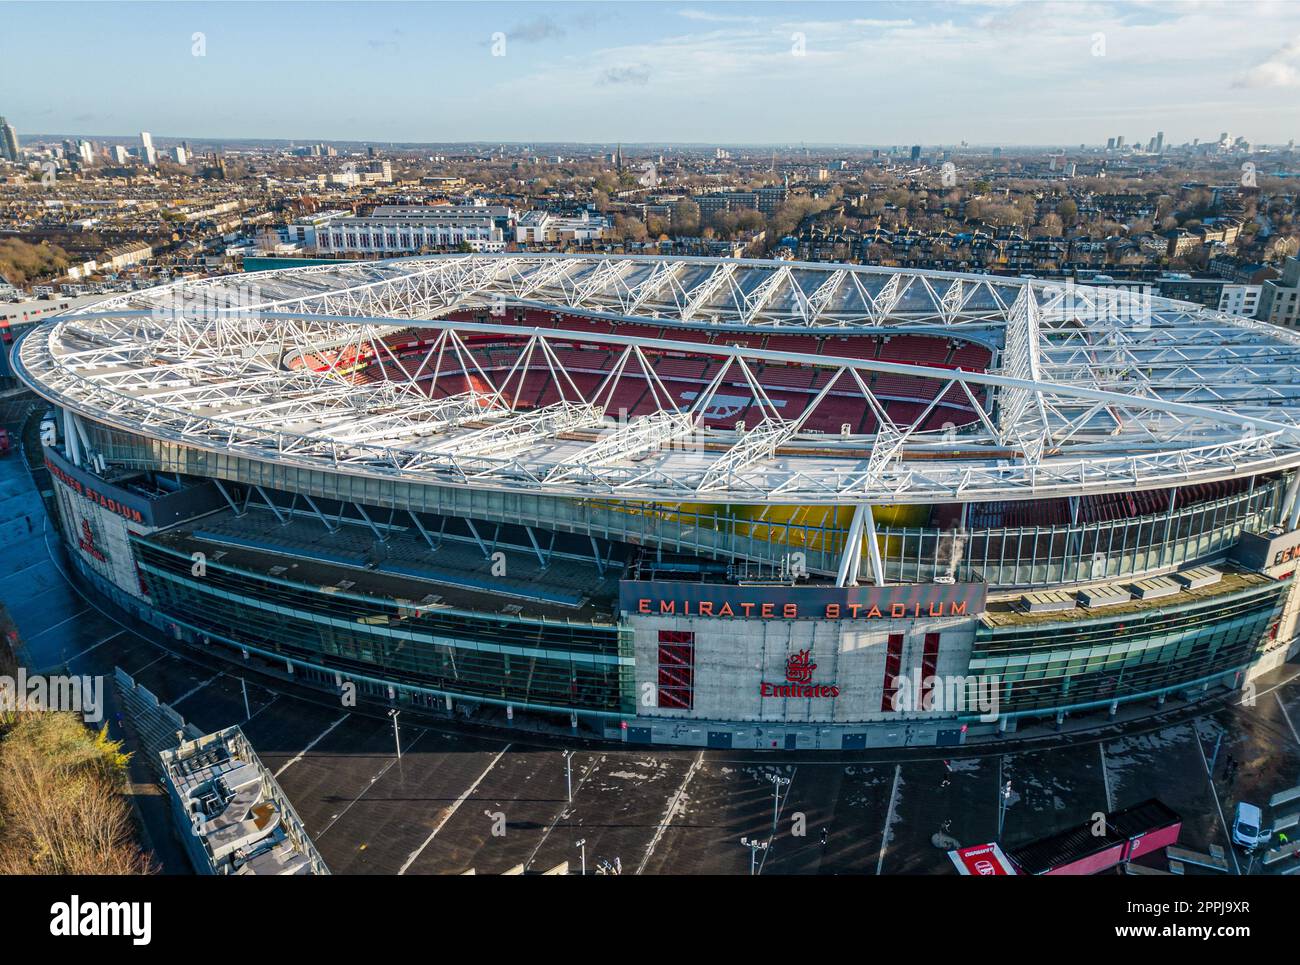 Emirates Stadium - sede dell'Arsenal London soccer club - vista aerea - LONDRA, Regno Unito - 20 DICEMBRE 2022 Foto Stock